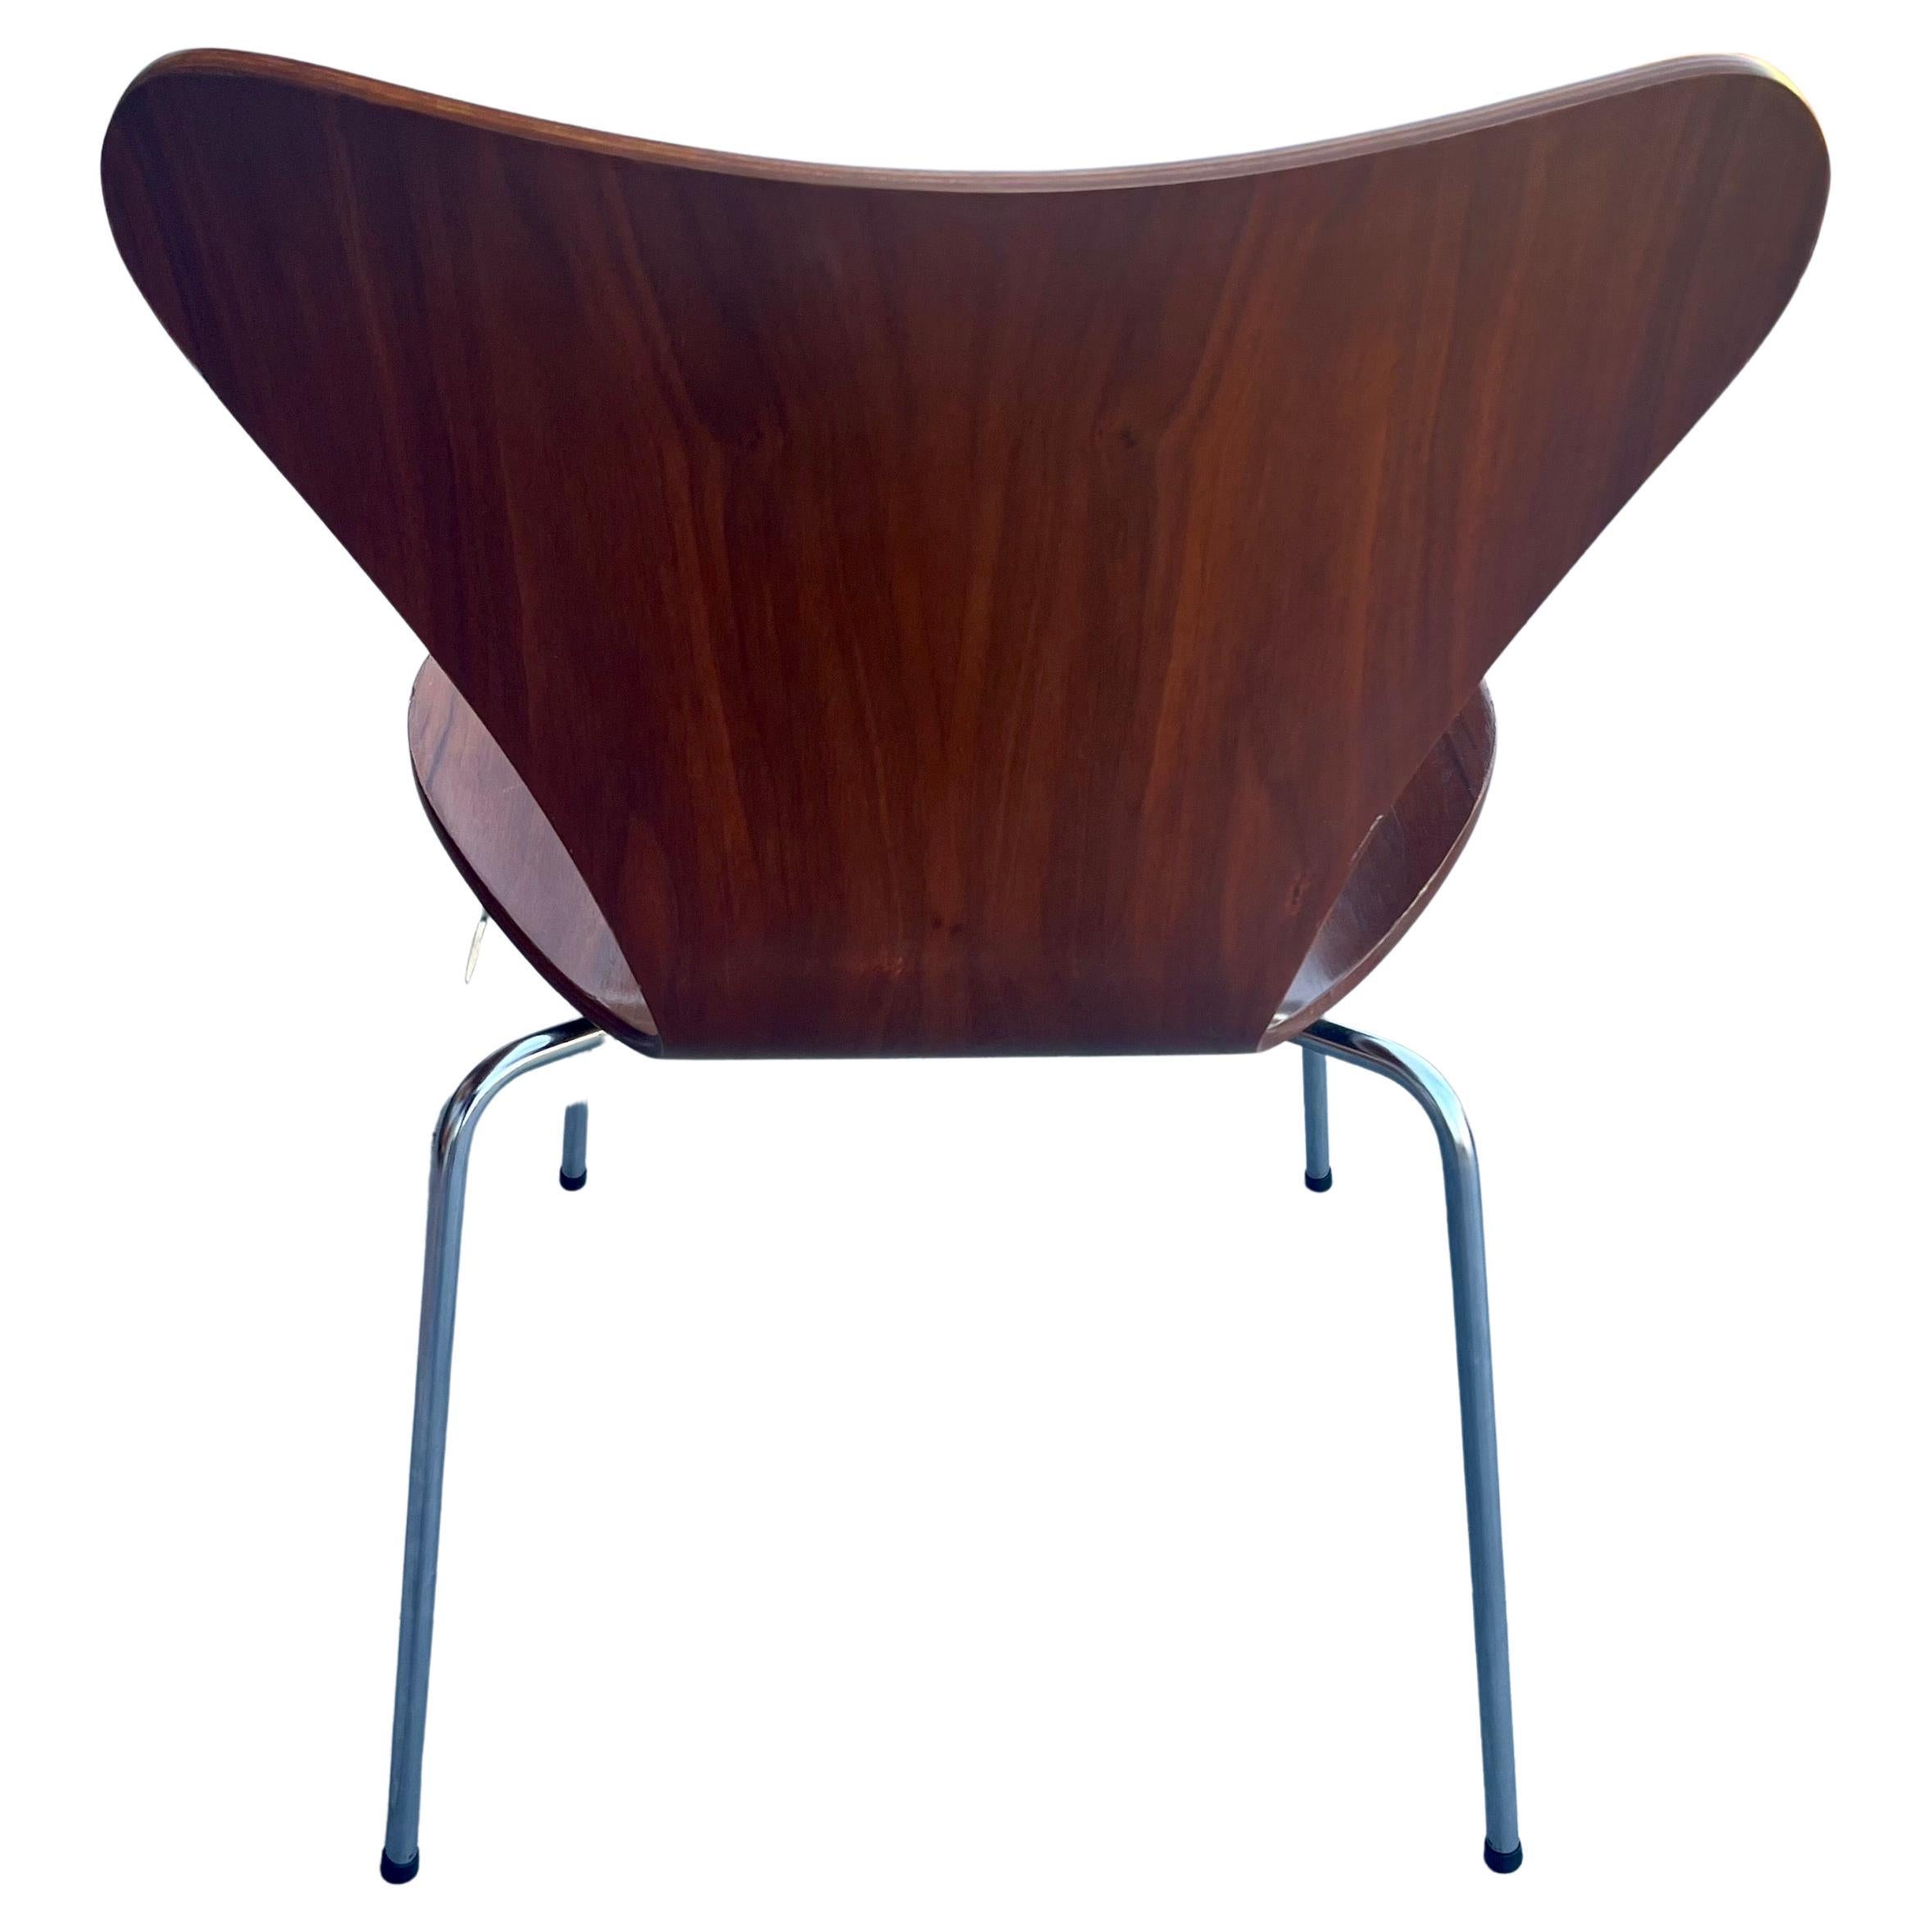 Magnifique chaise de la série 7 dessinée par Arne Jacobsen, pour Hansen en très bon état et propre. belle finition en teck foncé très propre, solide et robuste. Livré avec ses pieds en plastique d'origine.